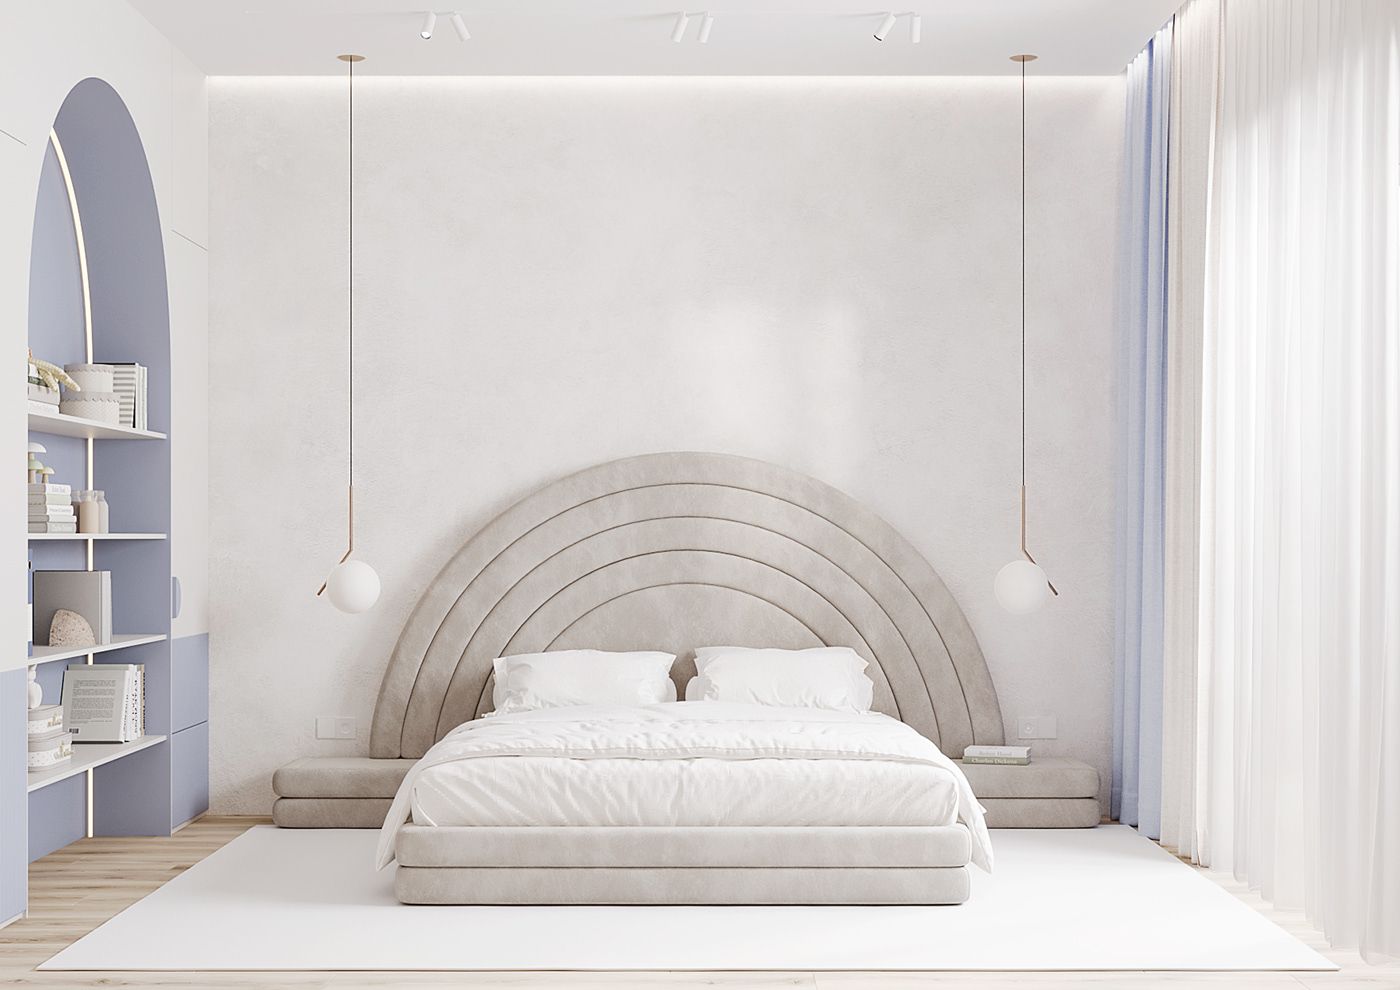 Phòng ngủ bé với thiết giường lạ mắt cùng tone màu trắng chủ đạo